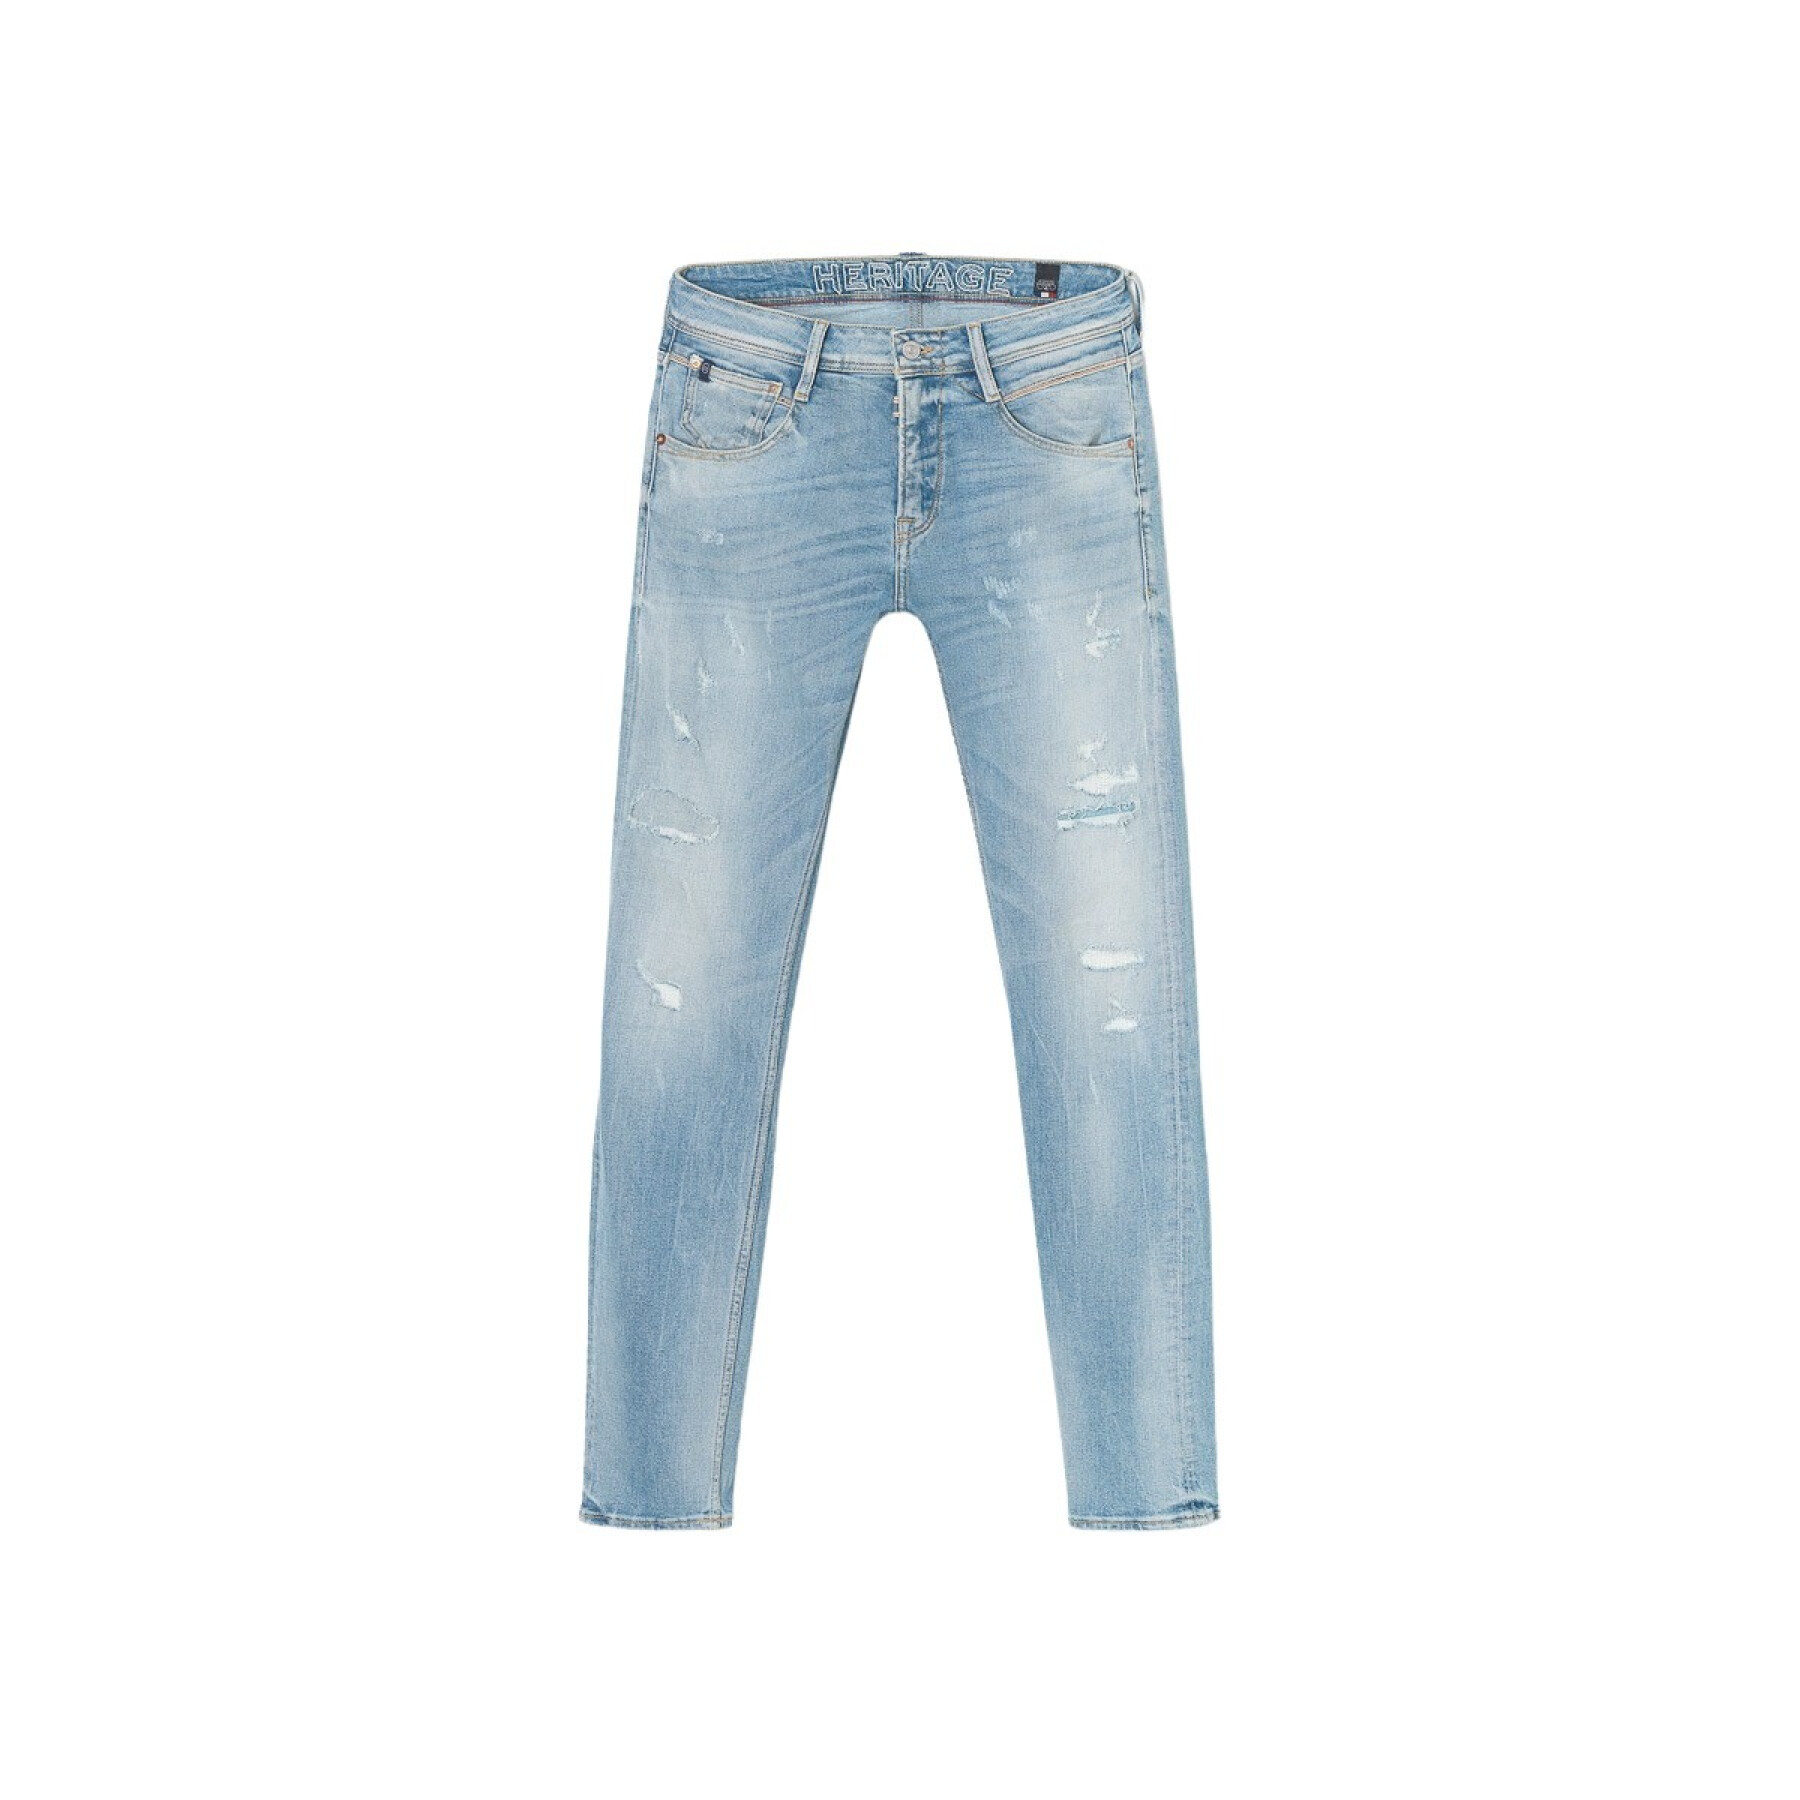 Destroyed jeans Le Temps des cerises Loos 700/11 N°5